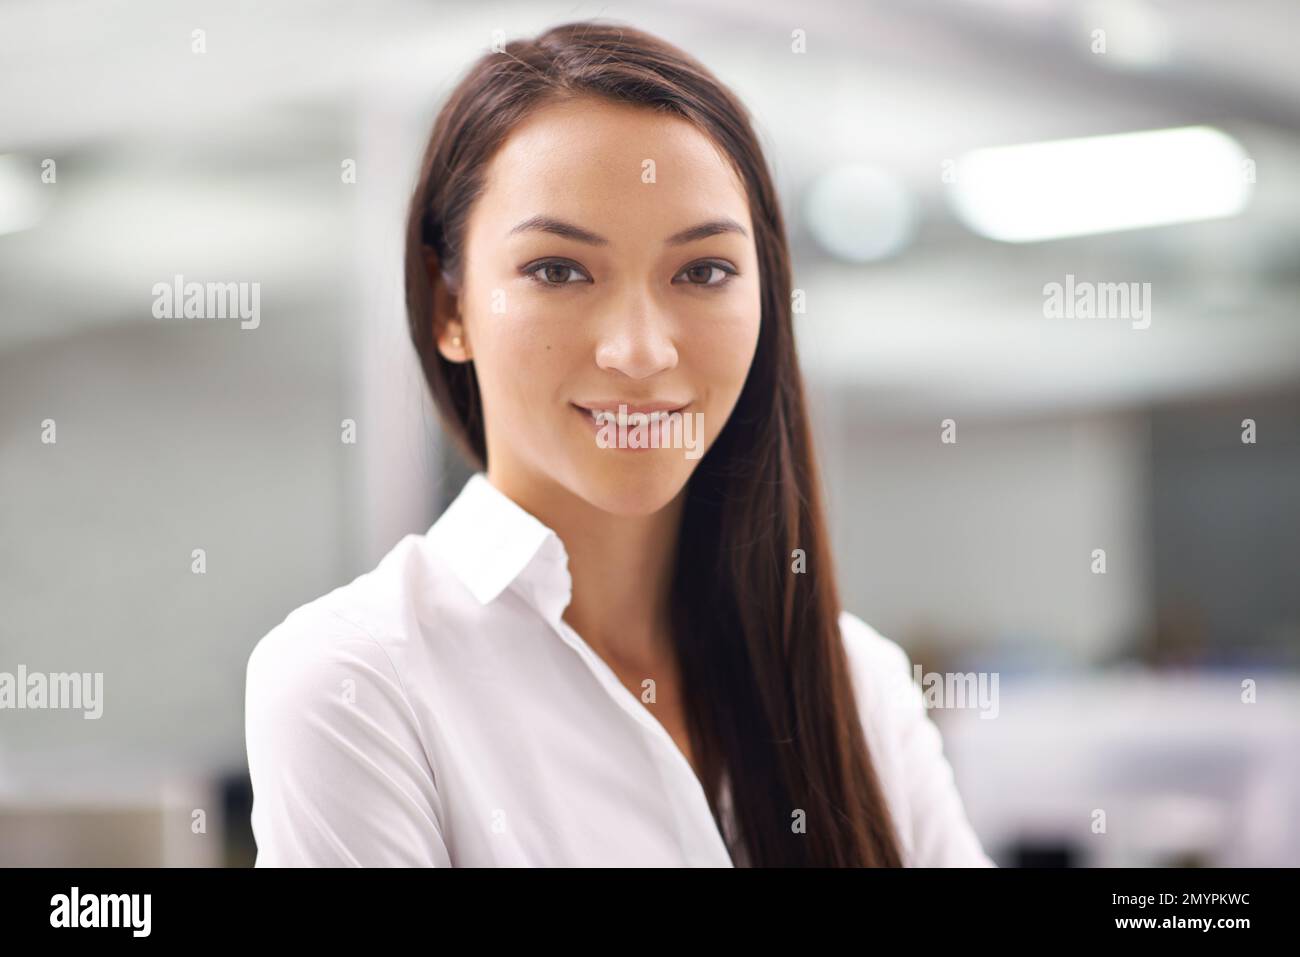 Sie passt perfekt zu Ihrem Unternehmen. Porträt einer attraktiven jungen Geschäftsfrau, die im Büro steht. Stockfoto